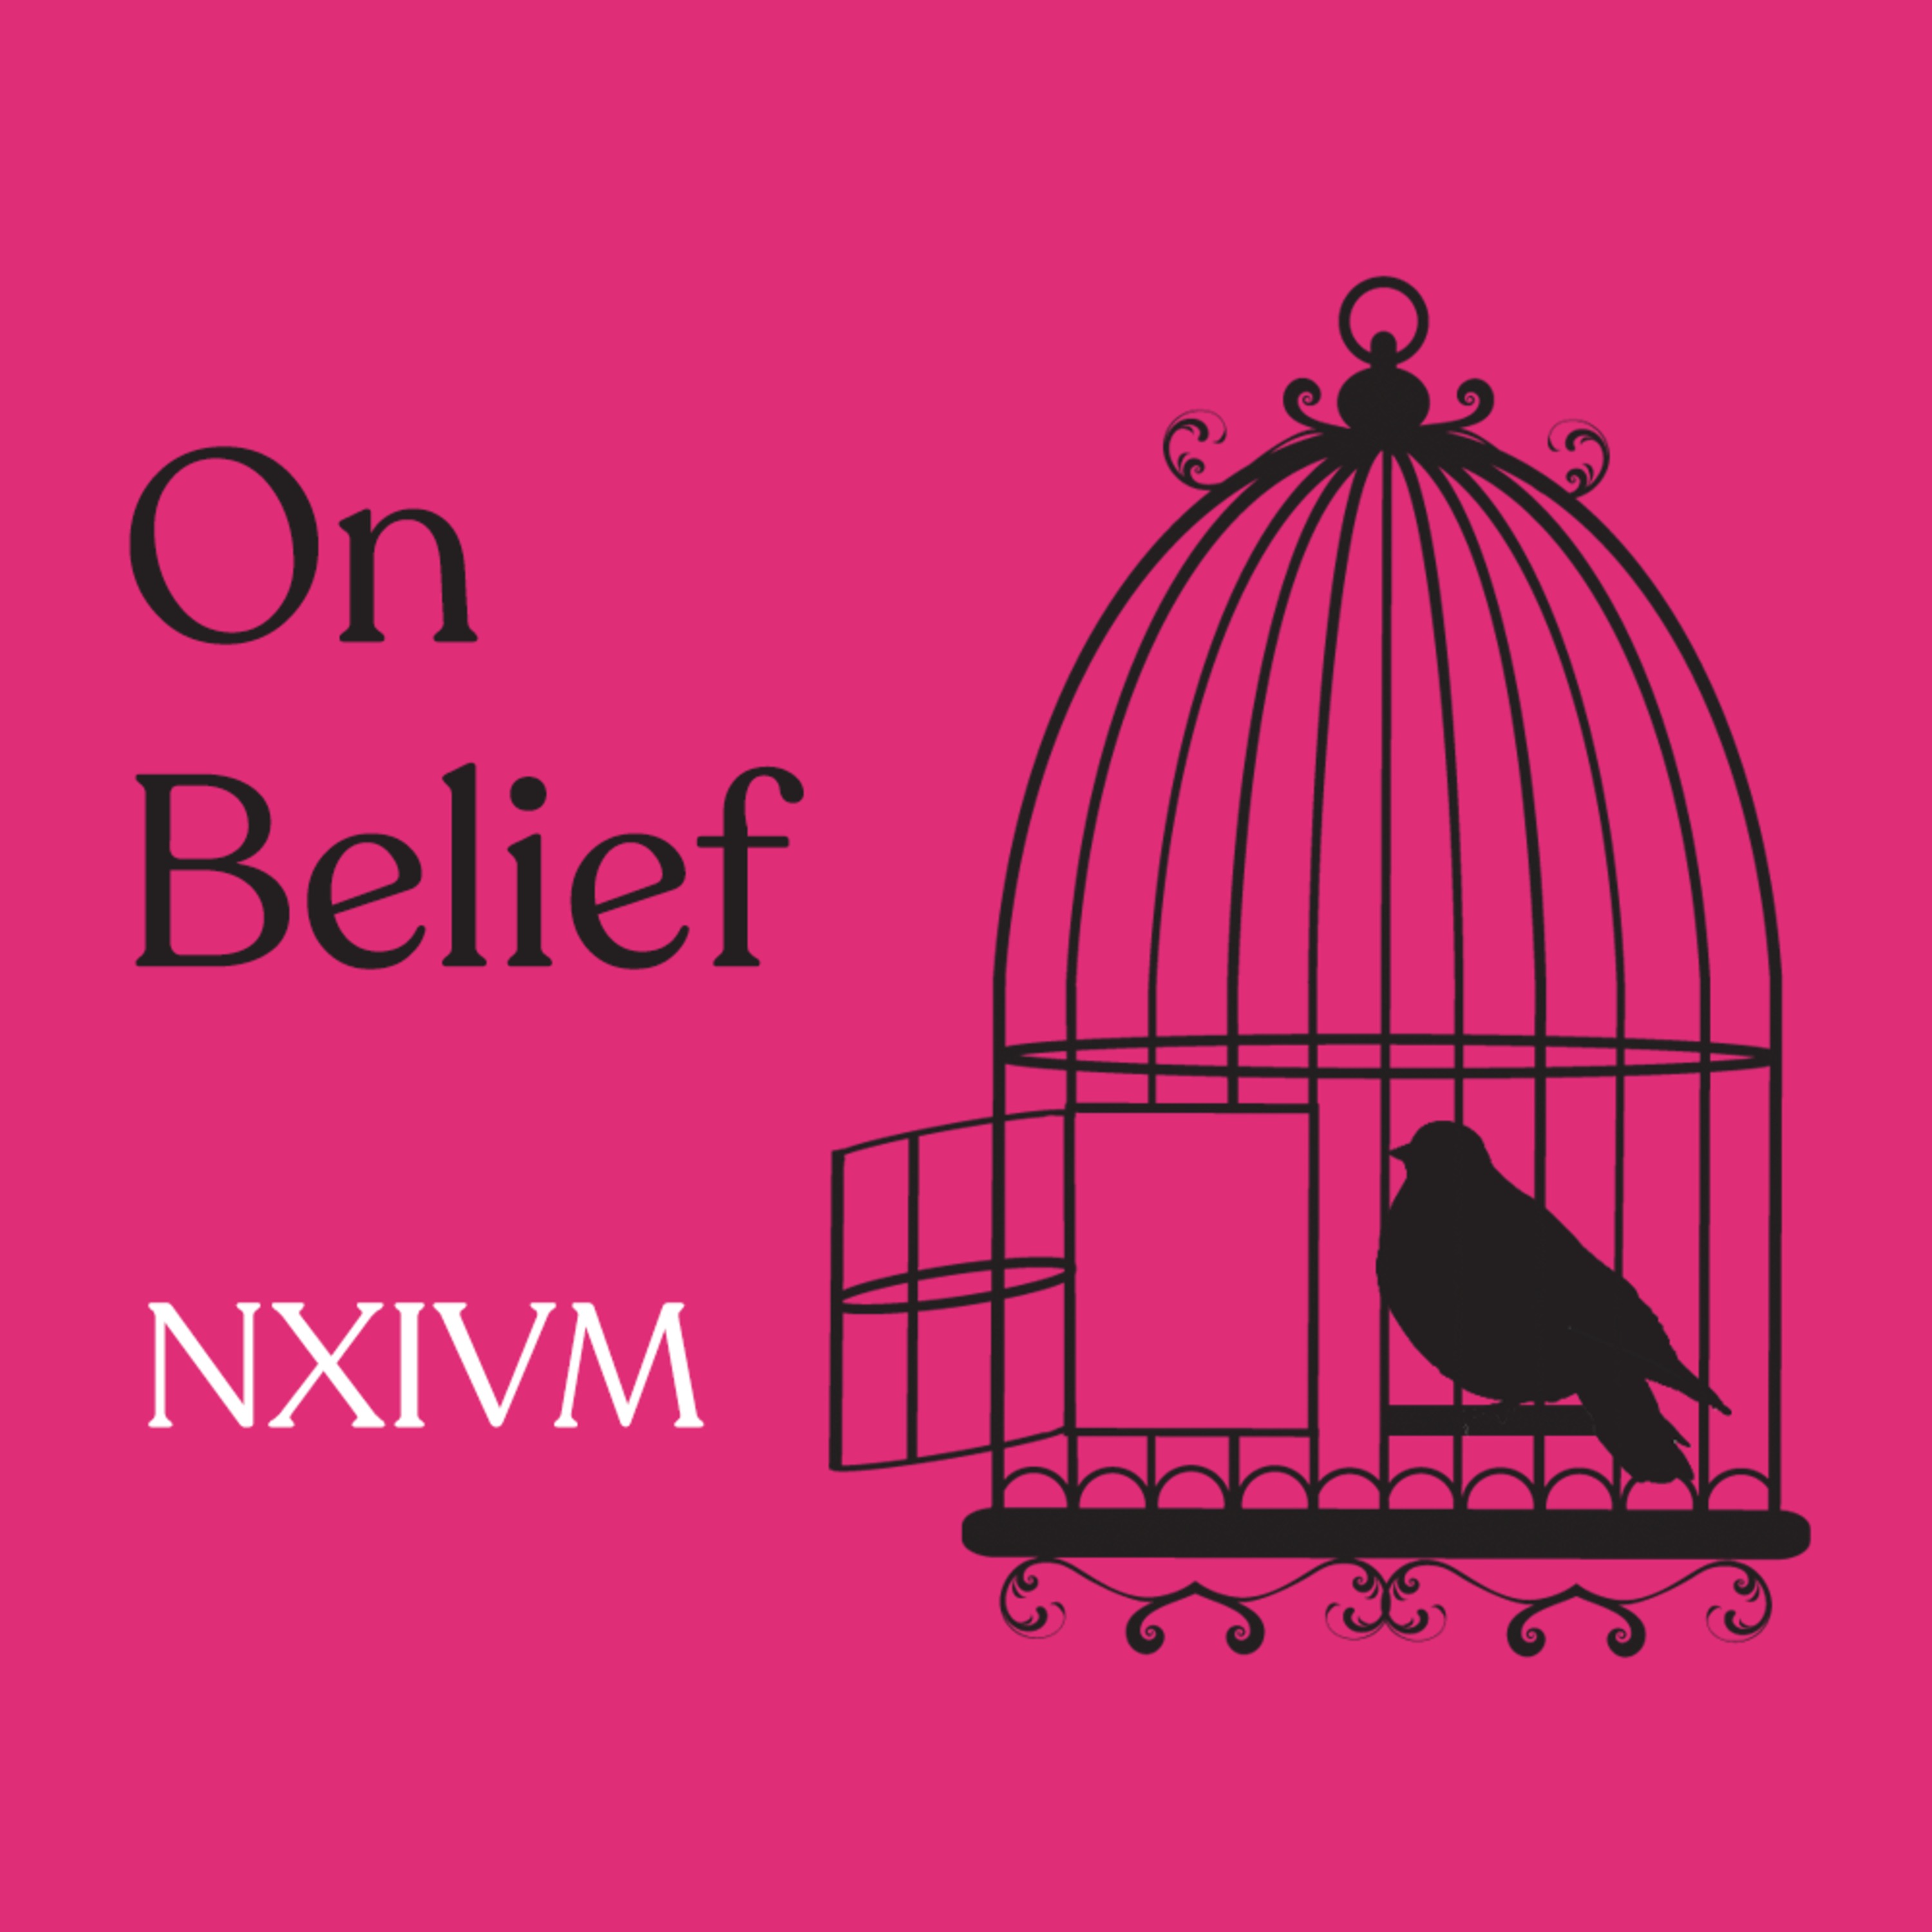 Episode 102: NXIVM With Guest Brock Wilbur